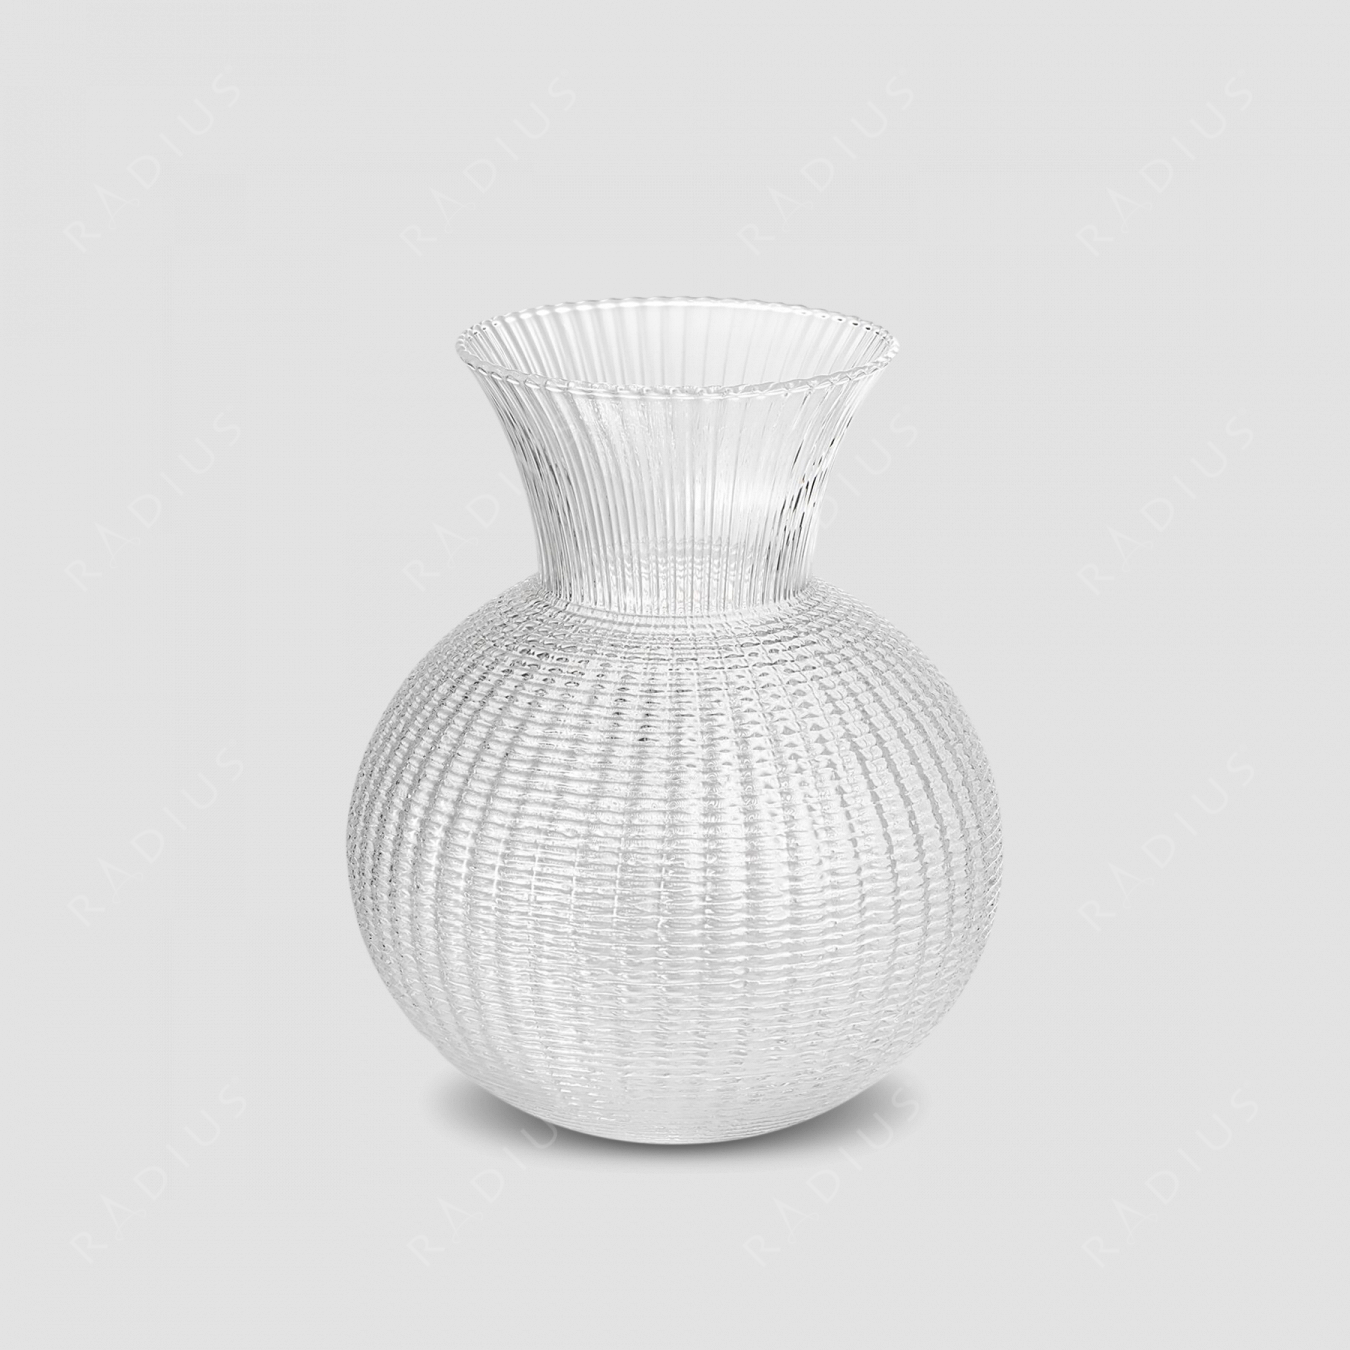 Стеклянная ваза для цветов, диаметр: 20,5 см, высота: 25 см, материал: стекло, серия Ophelia, IVV (Italy), Италия